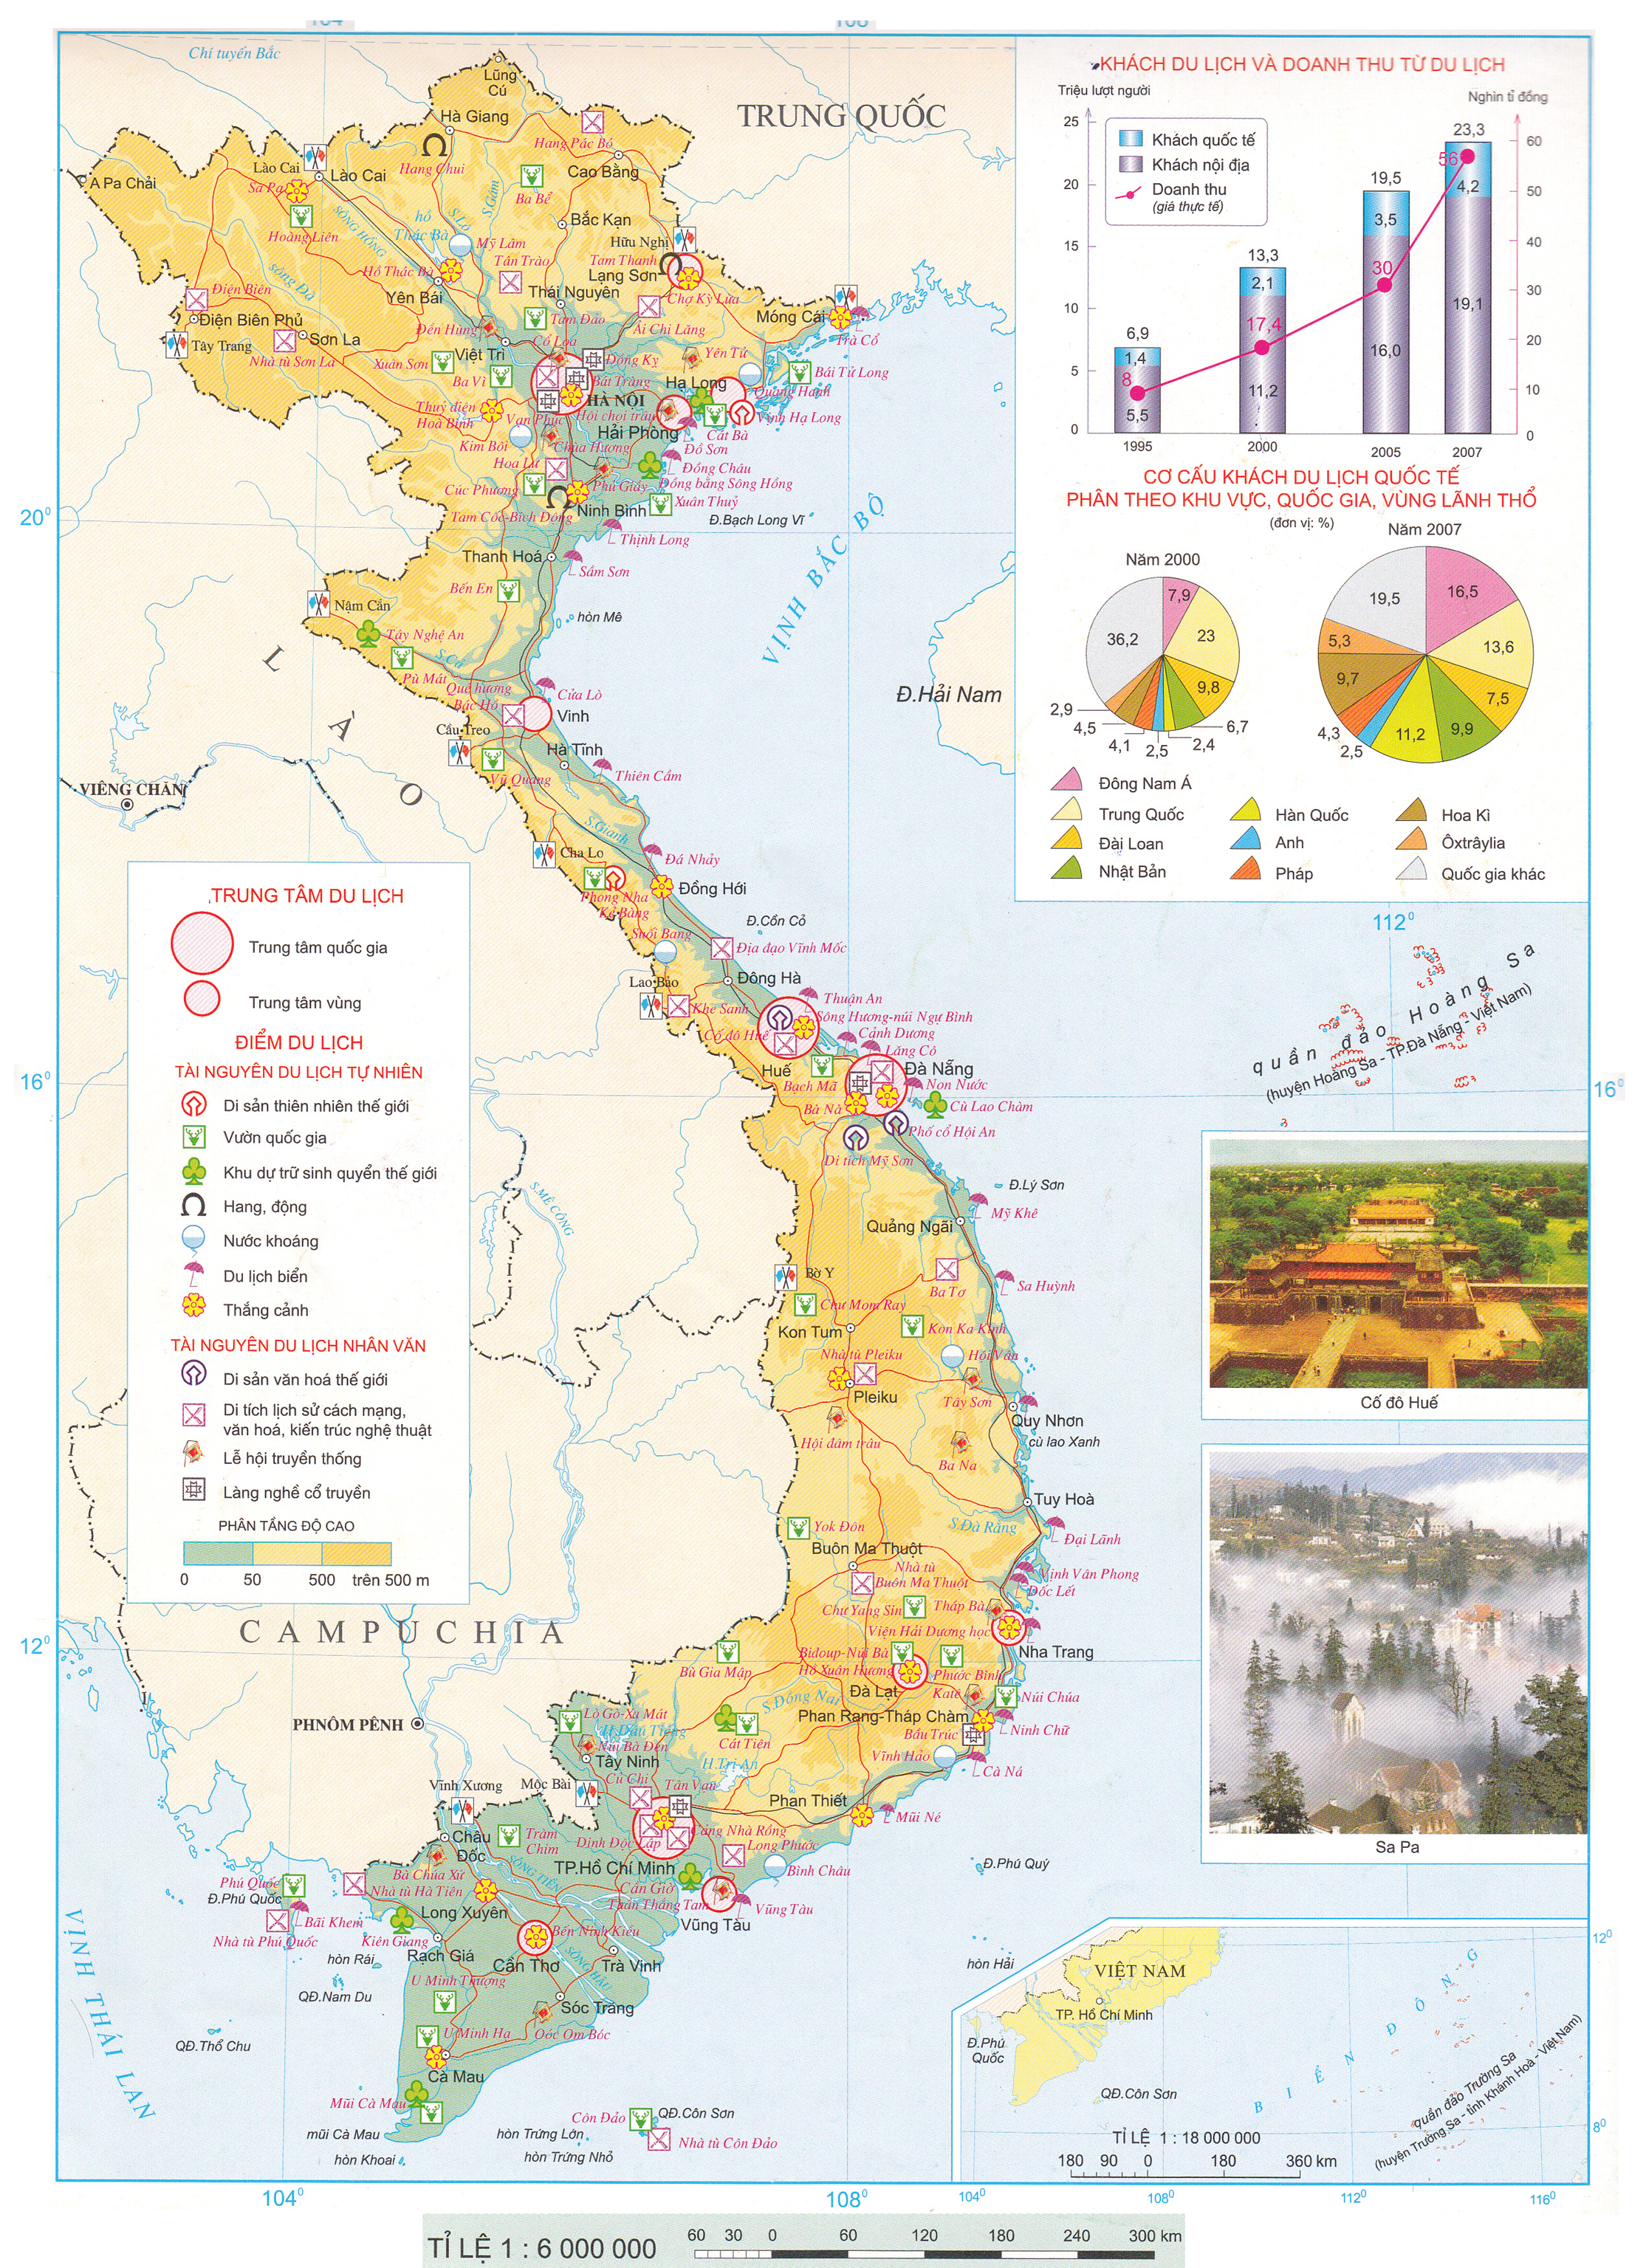 Lý thuyết Atlat Địa lí Việt Nam giúp bạn hiểu rõ hơn về các hiện tượng địa chất và địa hình đặc trưng của Việt Nam. Với những nghiên cứu mới nhất và bản đồ địa hình trong nước, bạn sẽ được trải nghiệm những phát hiện kỳ thú từng góc cạnh của đất nước. Hãy để bản đồ và lý thuyết giúp bạn khám phá những bí mật đầy thú vị của Việt Nam.